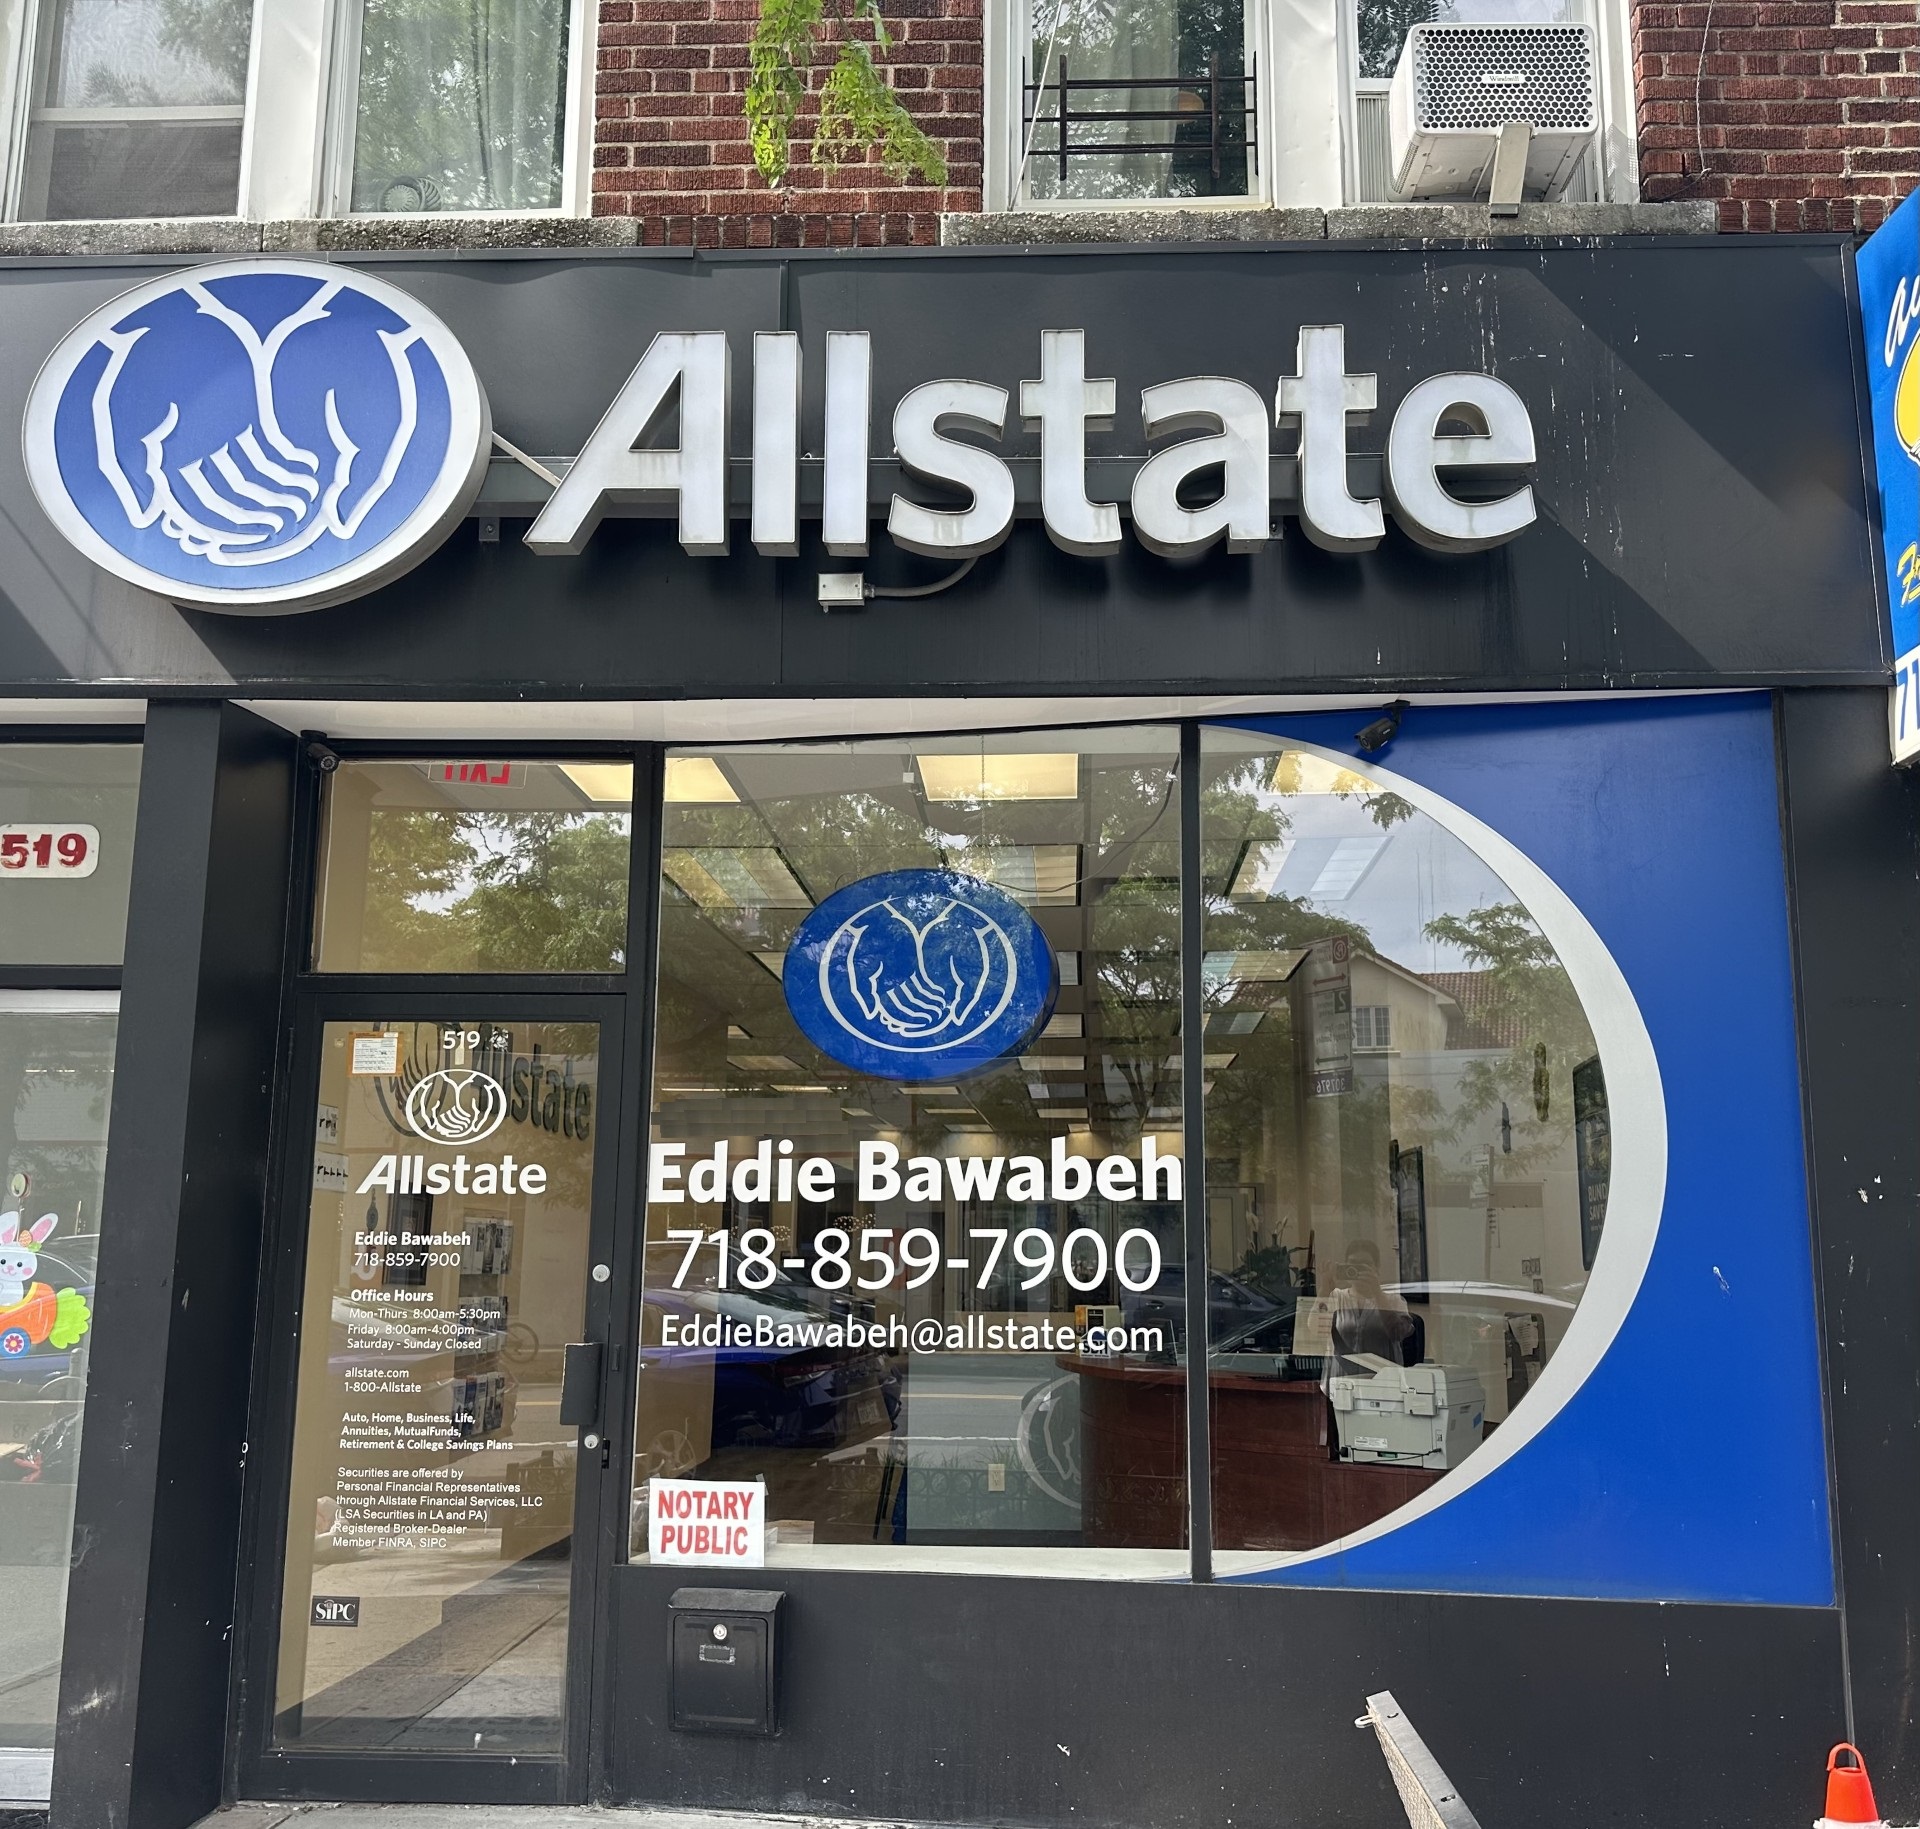 Eddie Bawabeh: Allstate Insurance Brooklyn (718)859-7900